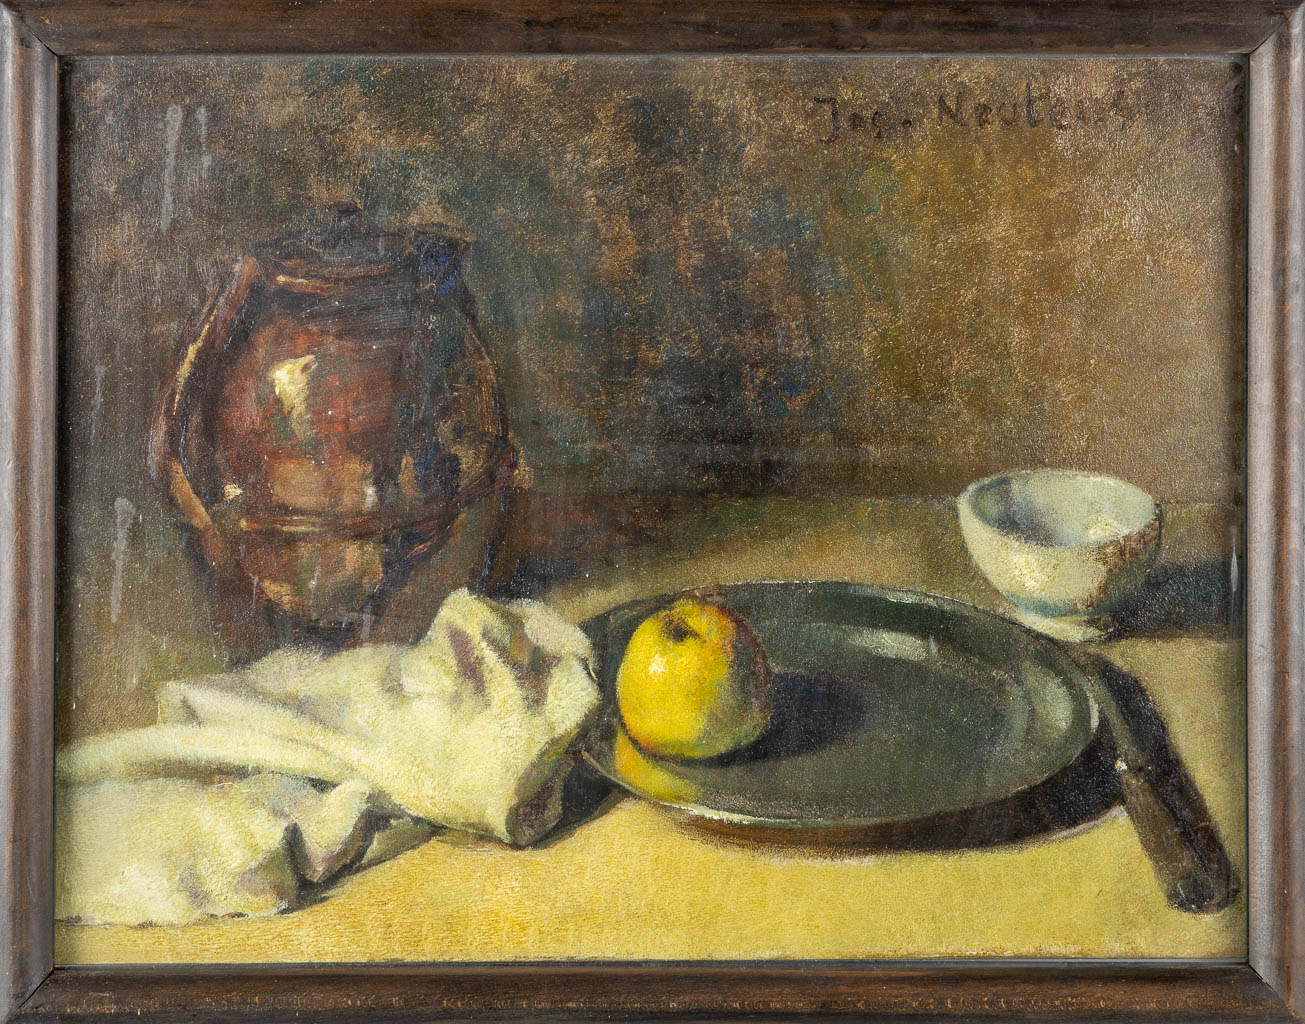  Joseph NEUTENS (1874-1965) 'Stilleven met een appel' 